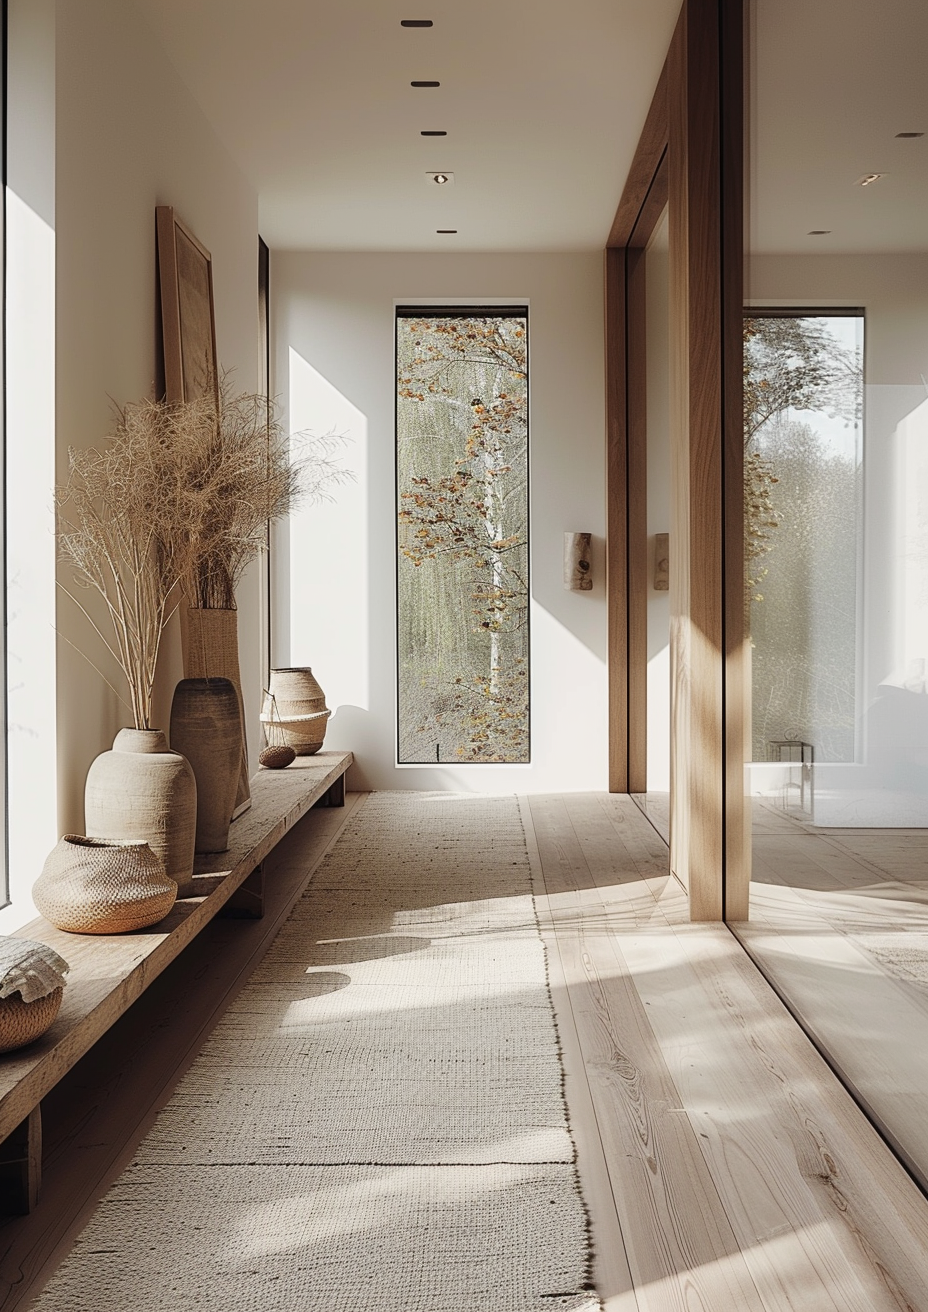 Balanced Japanese hallway harmonizing aesthetic appeal with functionality